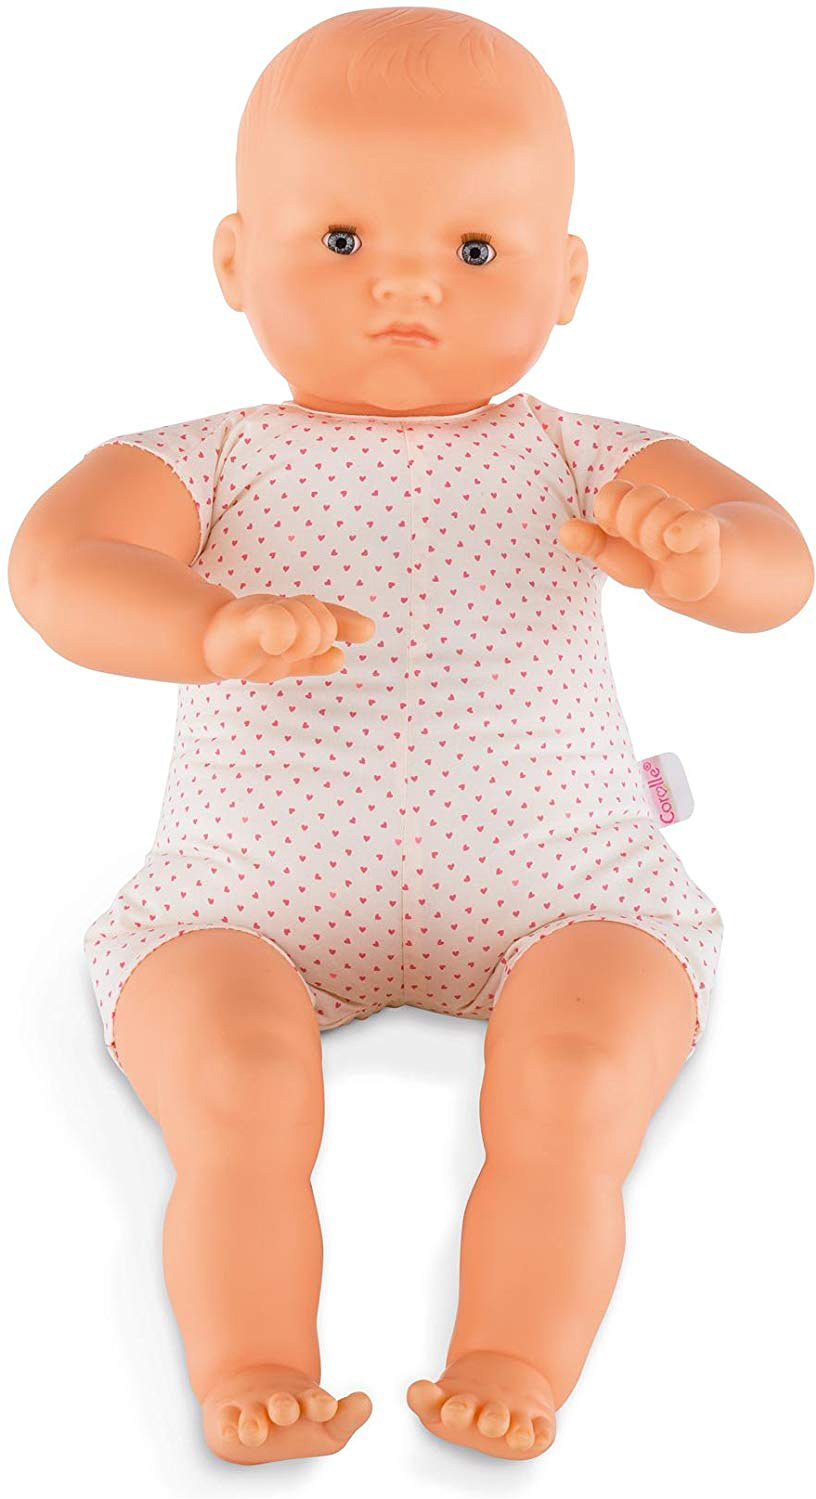 Bébé - jouet de poupée image stock. Image du chéri, poupée - 42474757